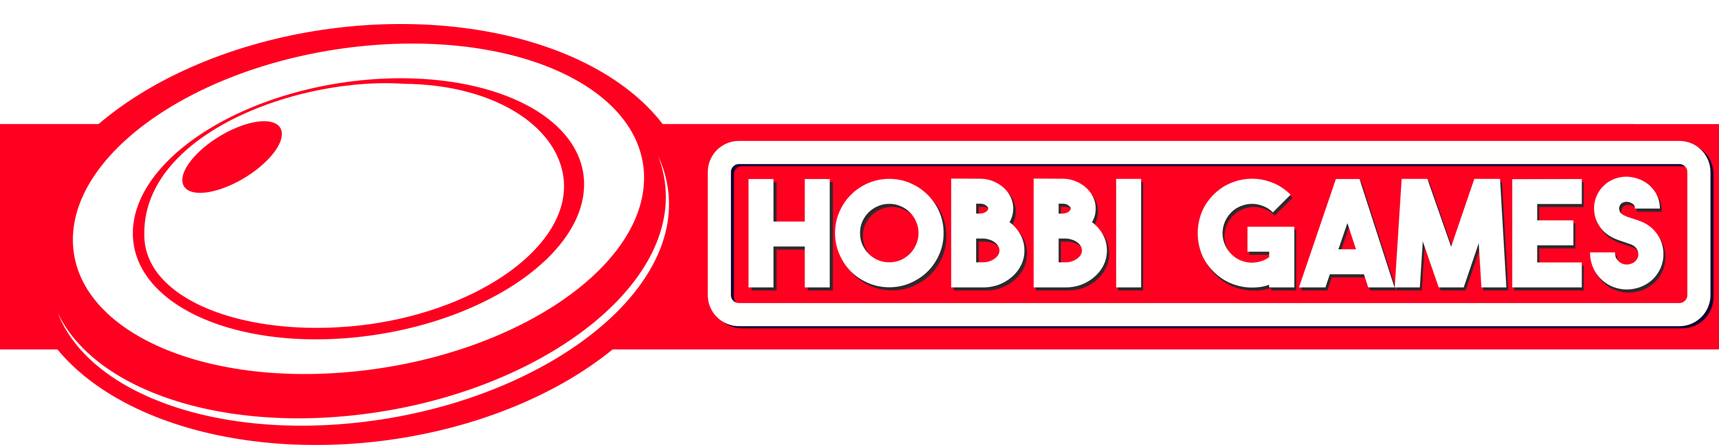 Hobbi Games